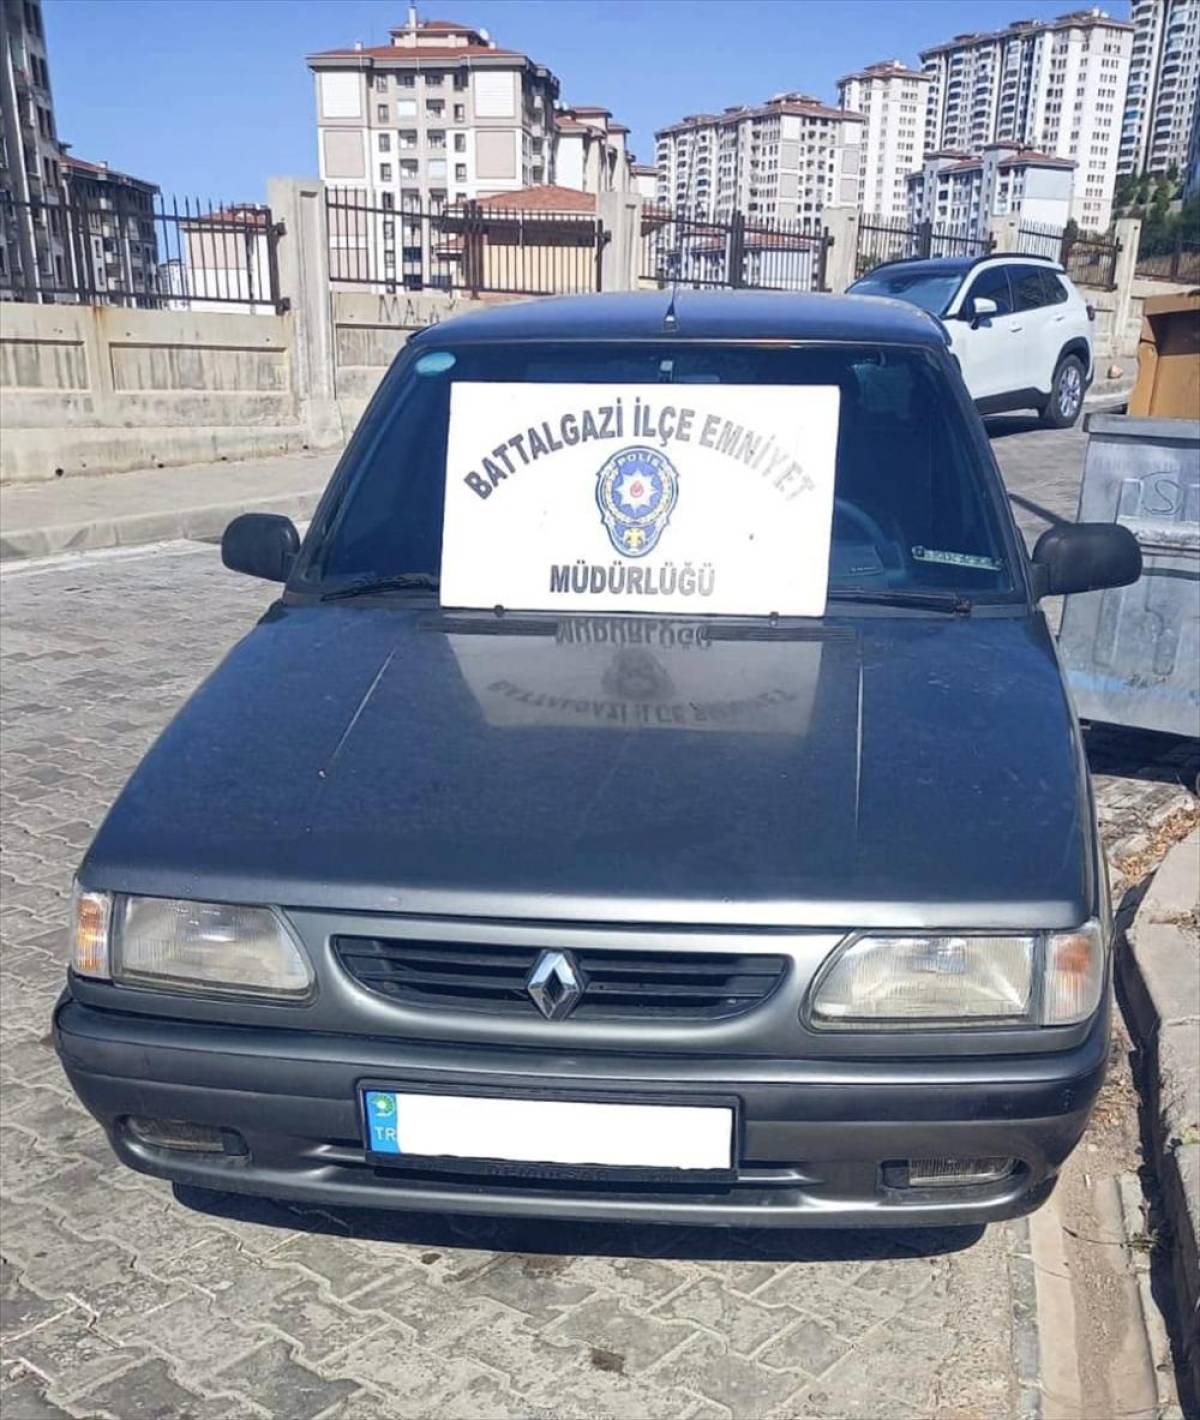 Malatya'da komşusunun aracını gasbeden şüpheli yakalandı